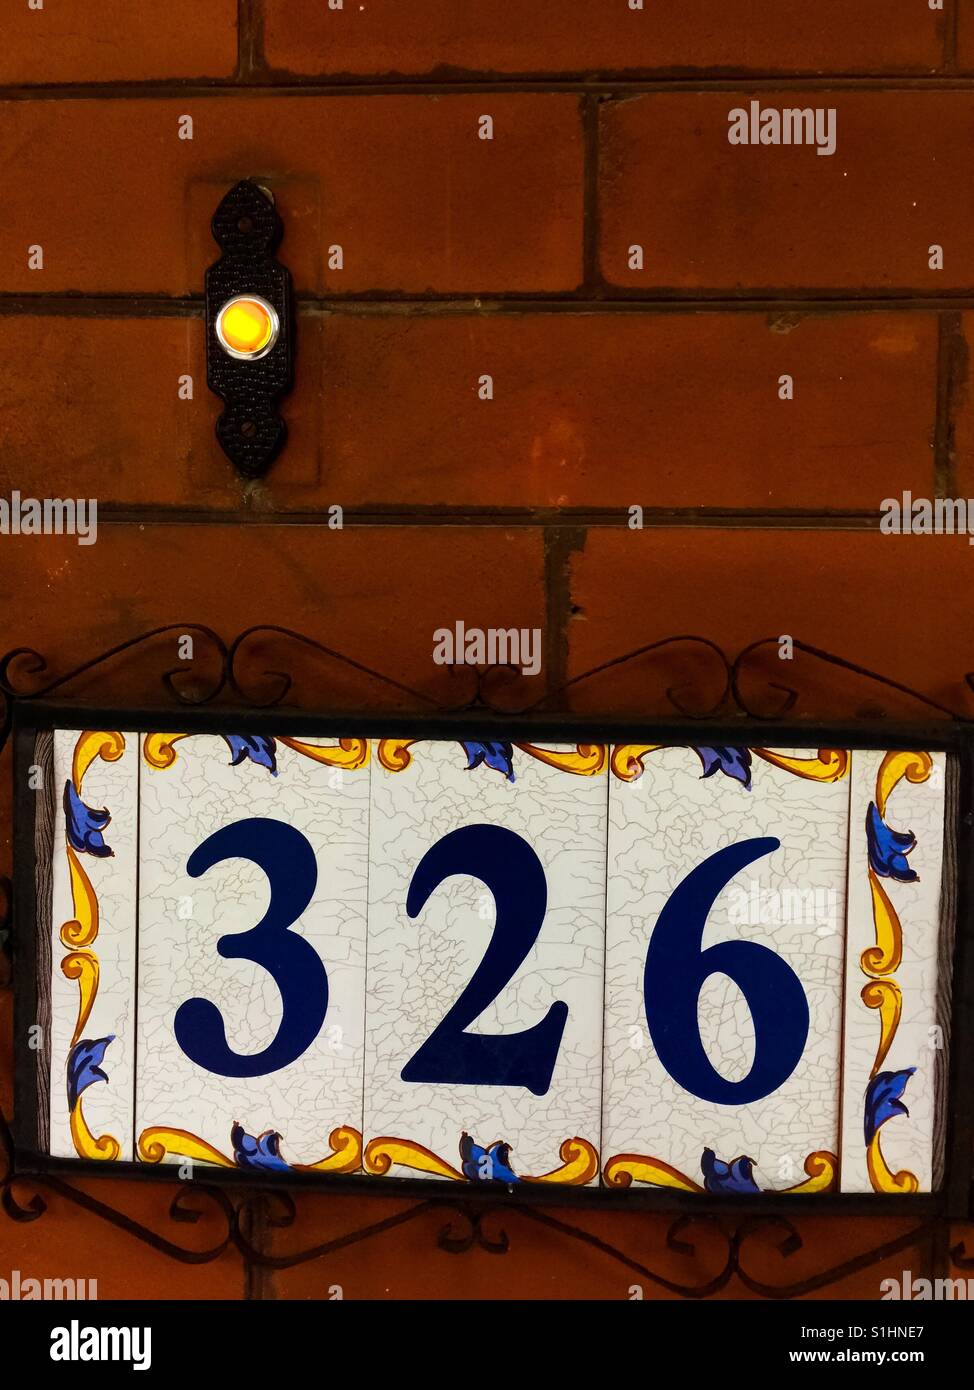 Plaque et cloche de maison ornée sur une maison de briques rouges datant d'un siècle, Ontario, Canada. Concepts : bonnier, classique, solide. Bon vieux jours. Se souvenir. Passé. Banque D'Images